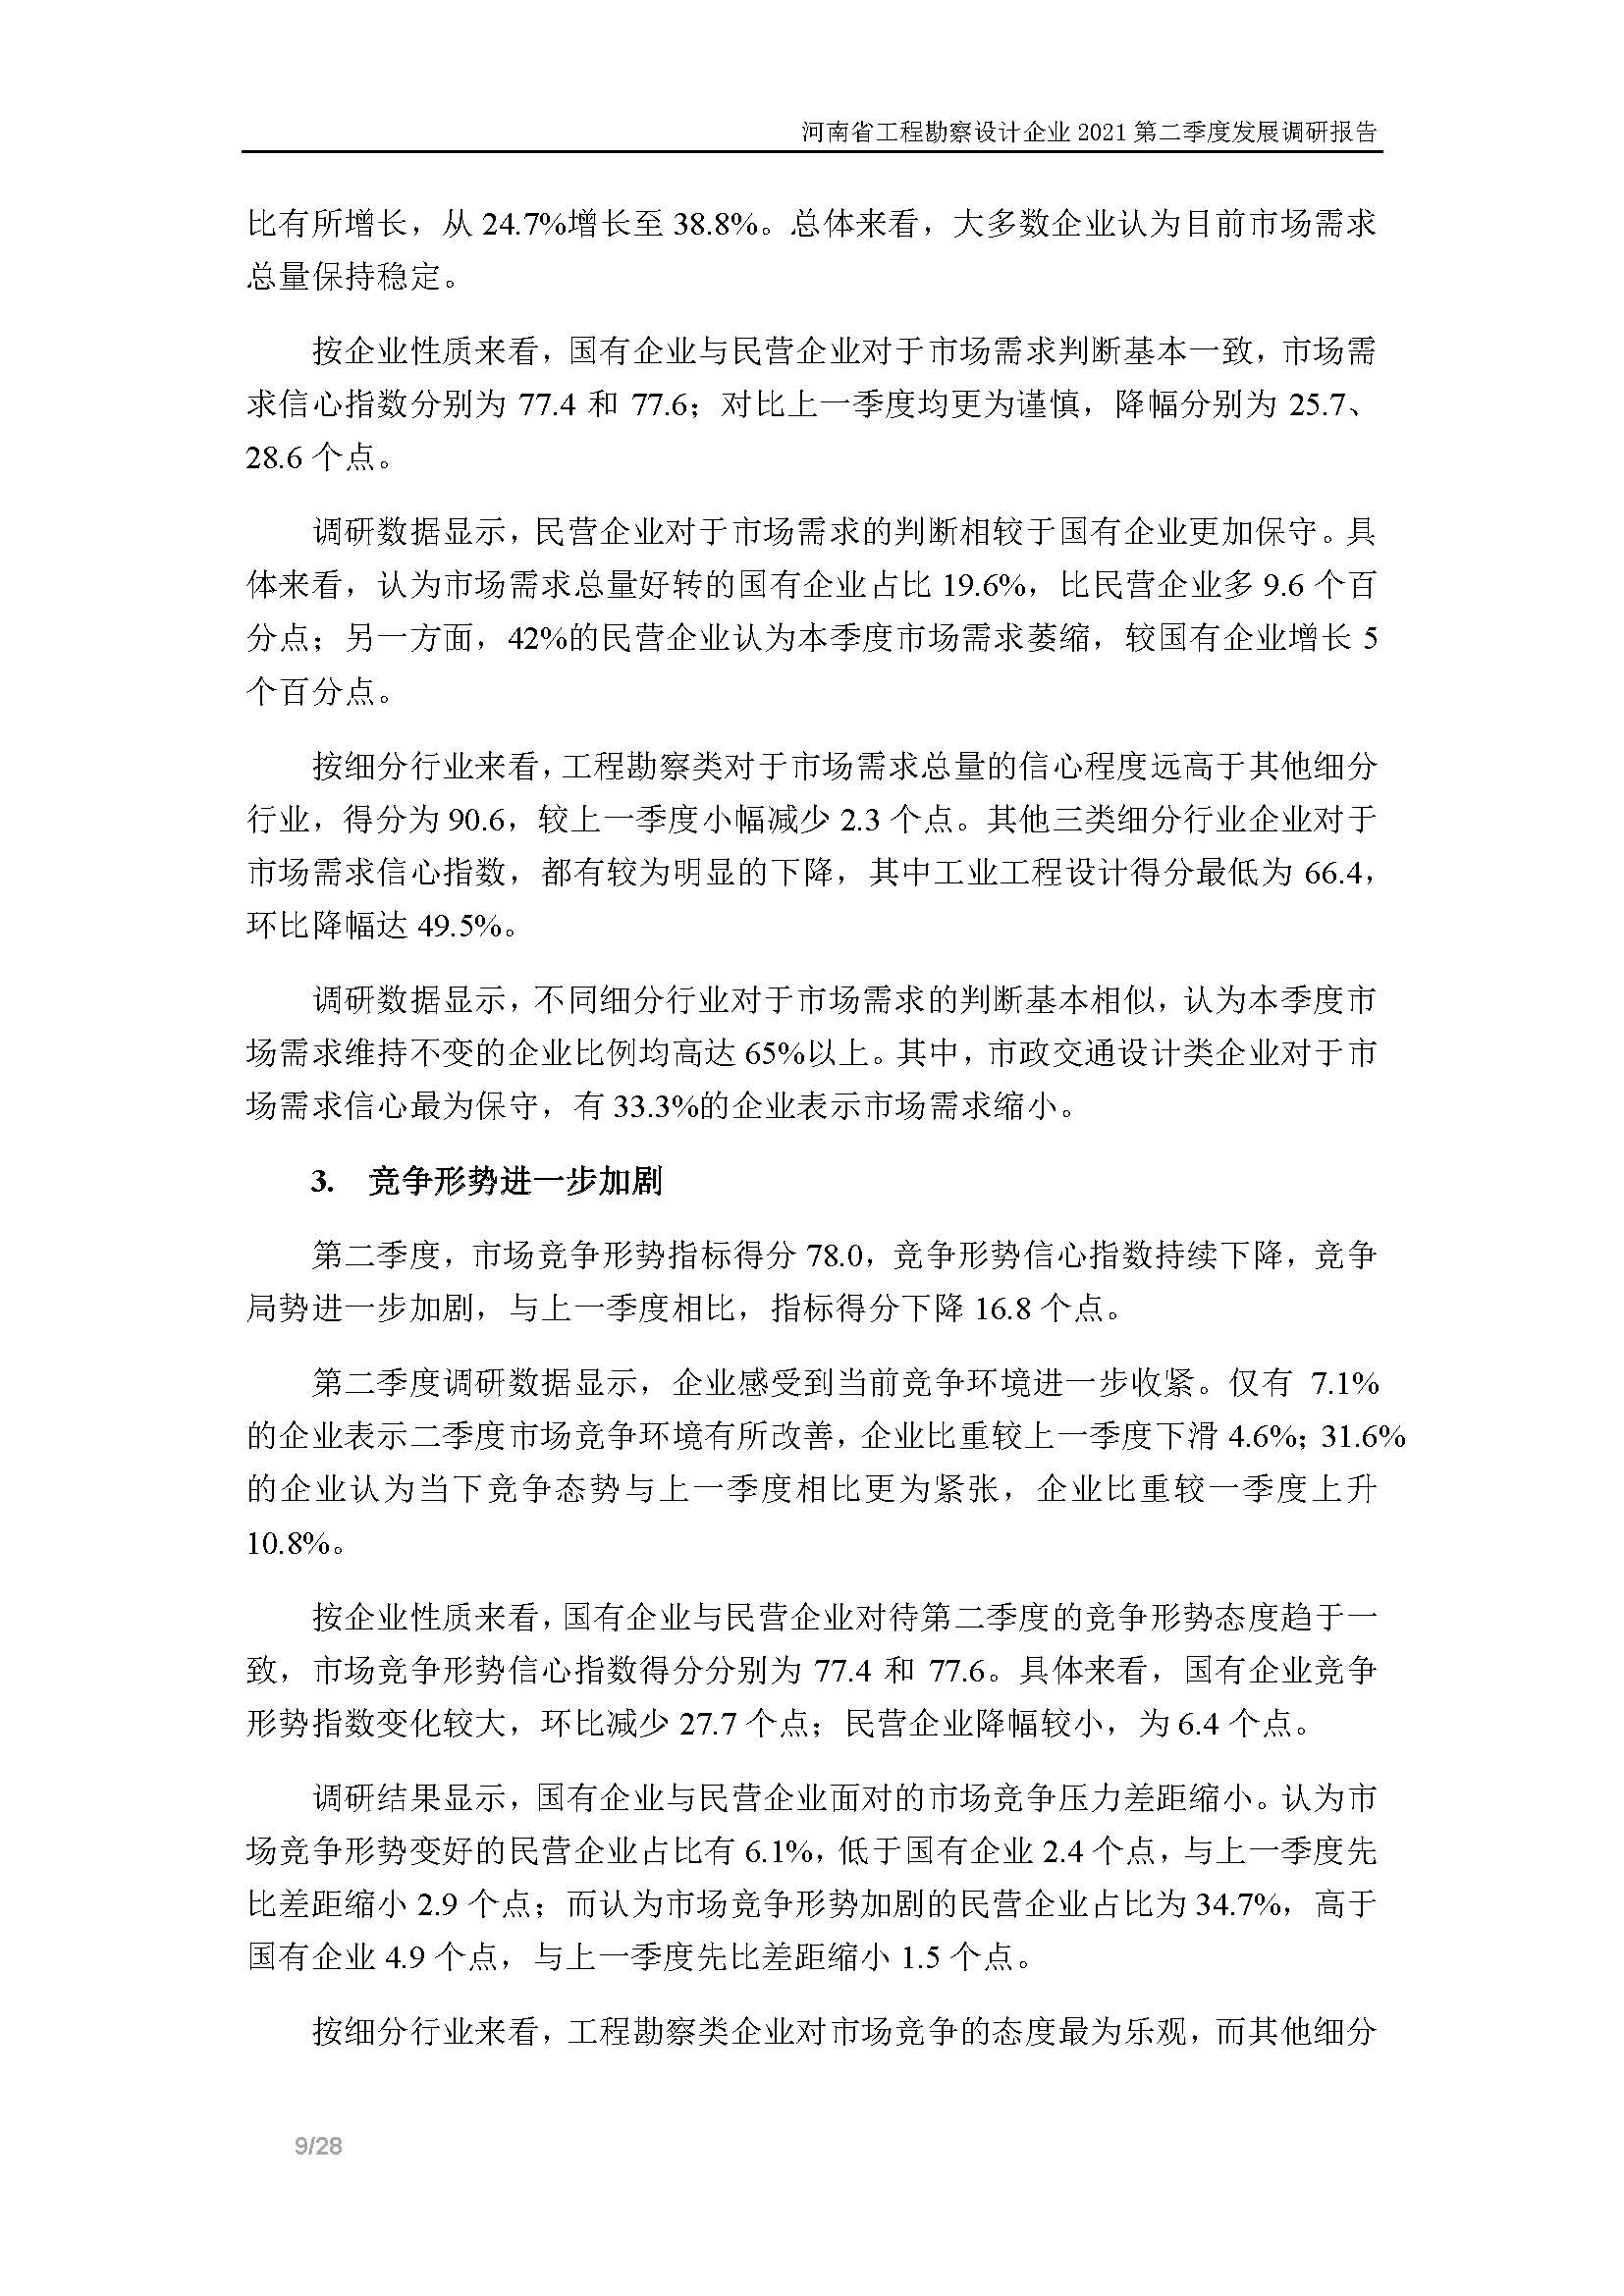 河南省工程勘察设计企业2021第二季度发展调研报告-公开版_页面_10.jpg